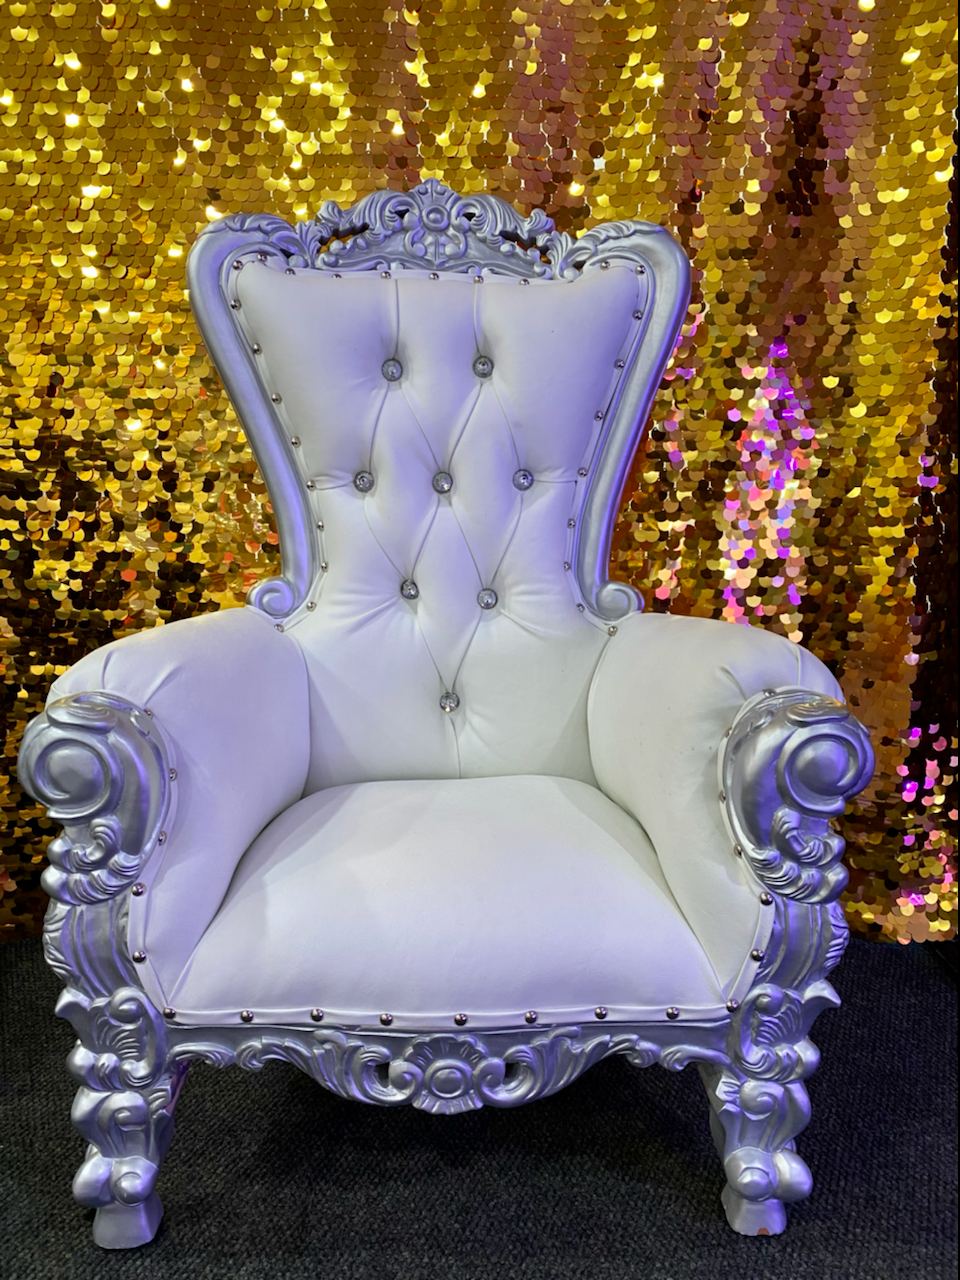 Kid's Throne Chair Silver/White